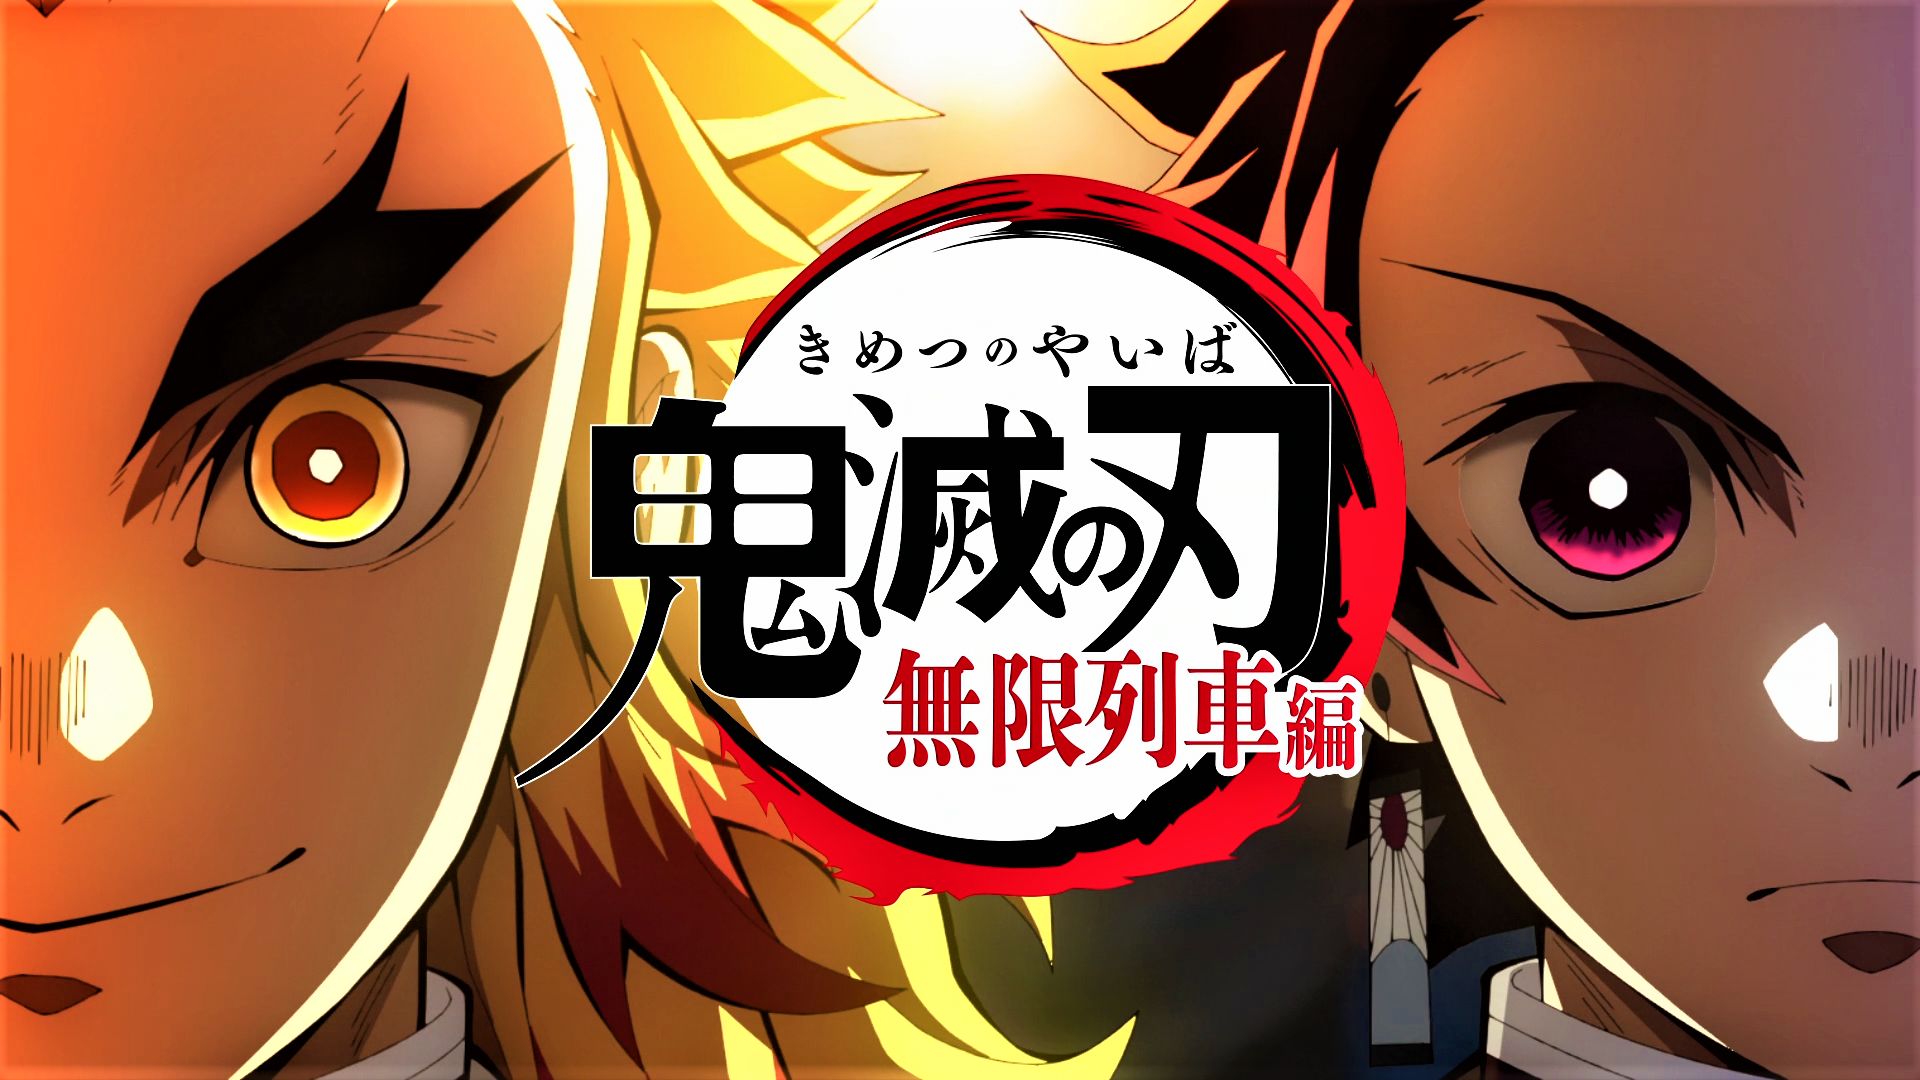 Download mobile wallpaper Anime, Demon Slayer: Kimetsu No Yaiba, Kyojuro Rengoku, Tanjiro Kamado for free.